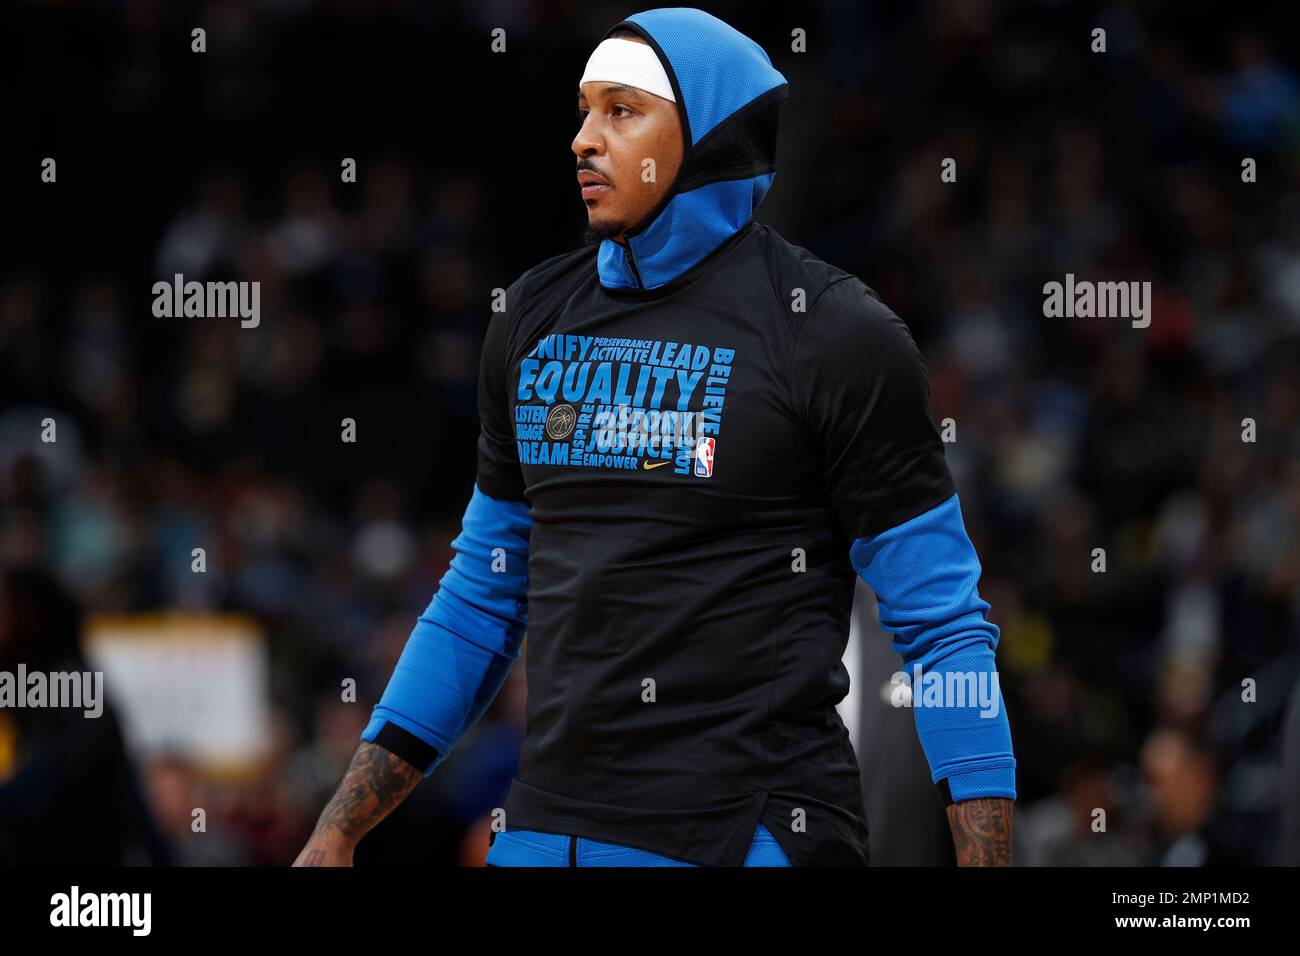 Oklahoma City Thunder forward Carmelo Anthony (7) wears his Jordan